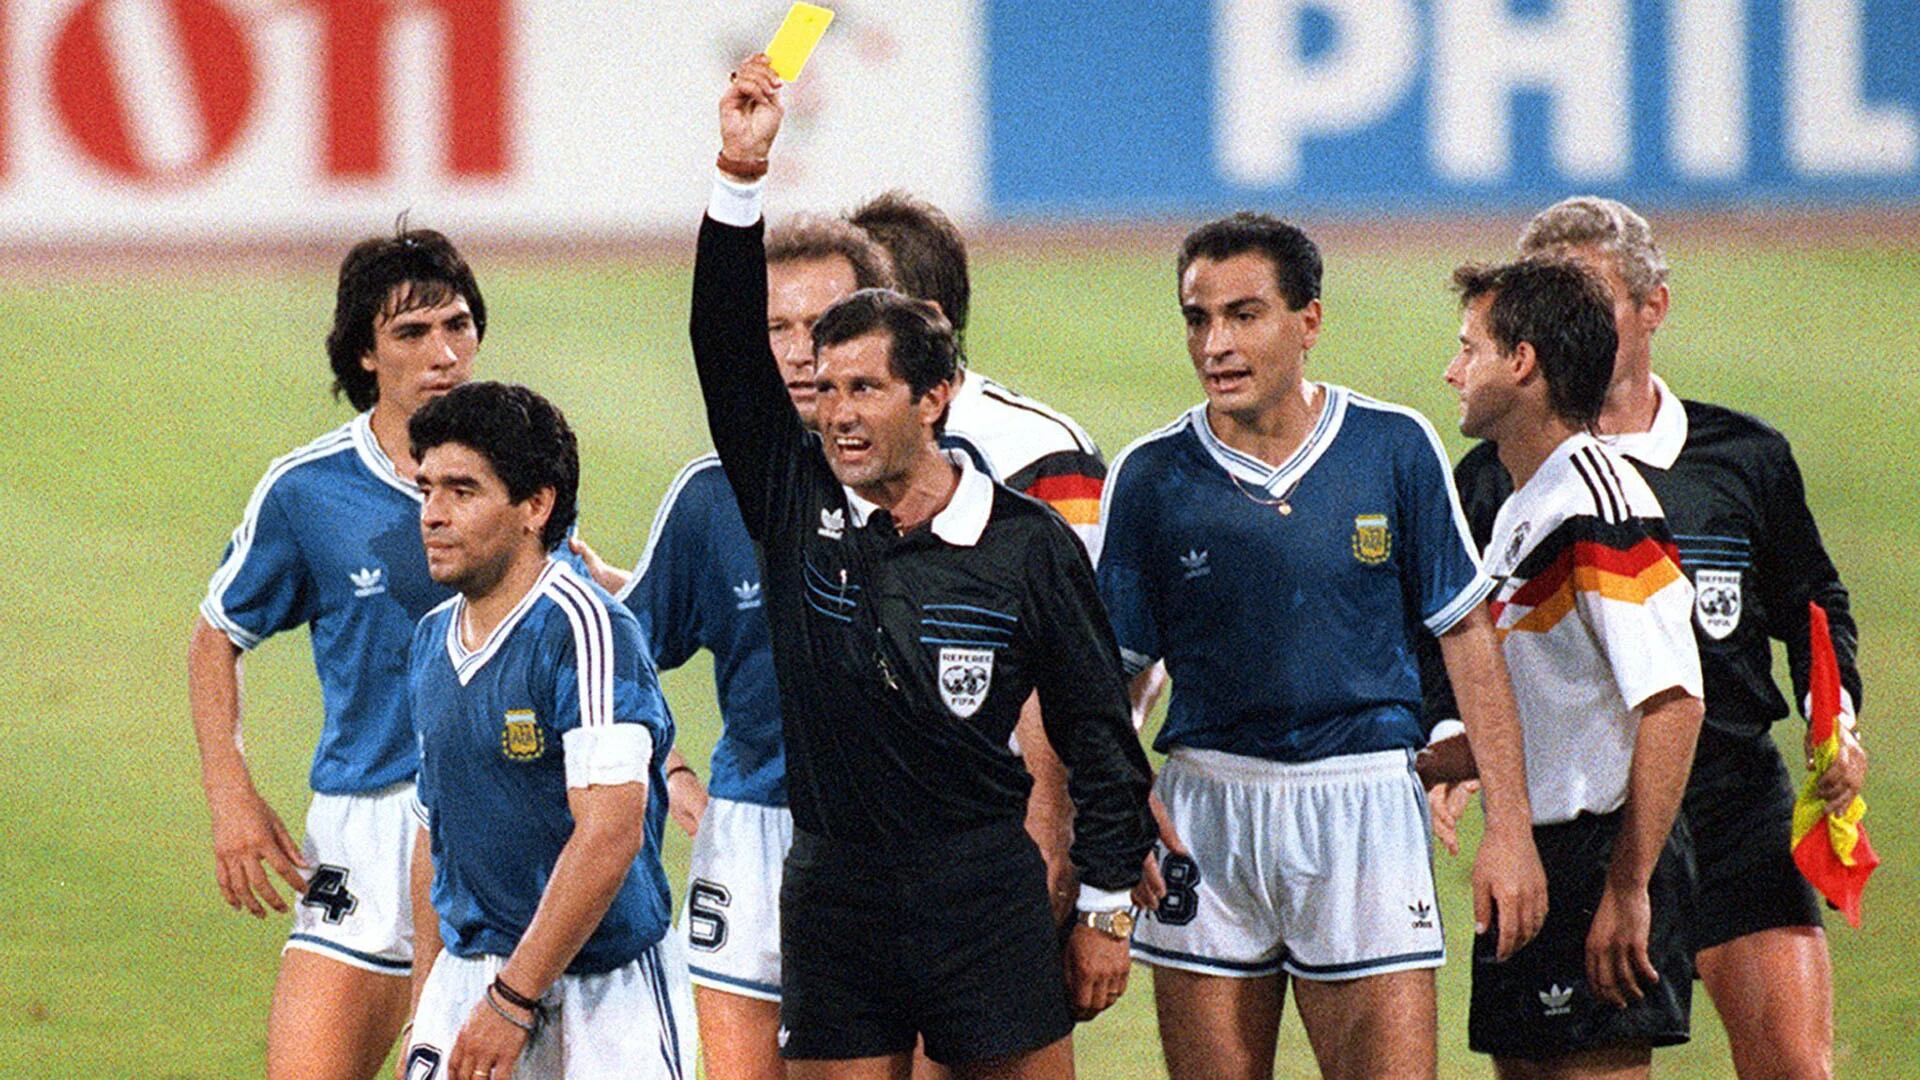 La revelación sobre final del Mundial de Italia 90 entre Alemania y Argentina que pone en aprietos árbitro Edgardo Codesal - Infobae